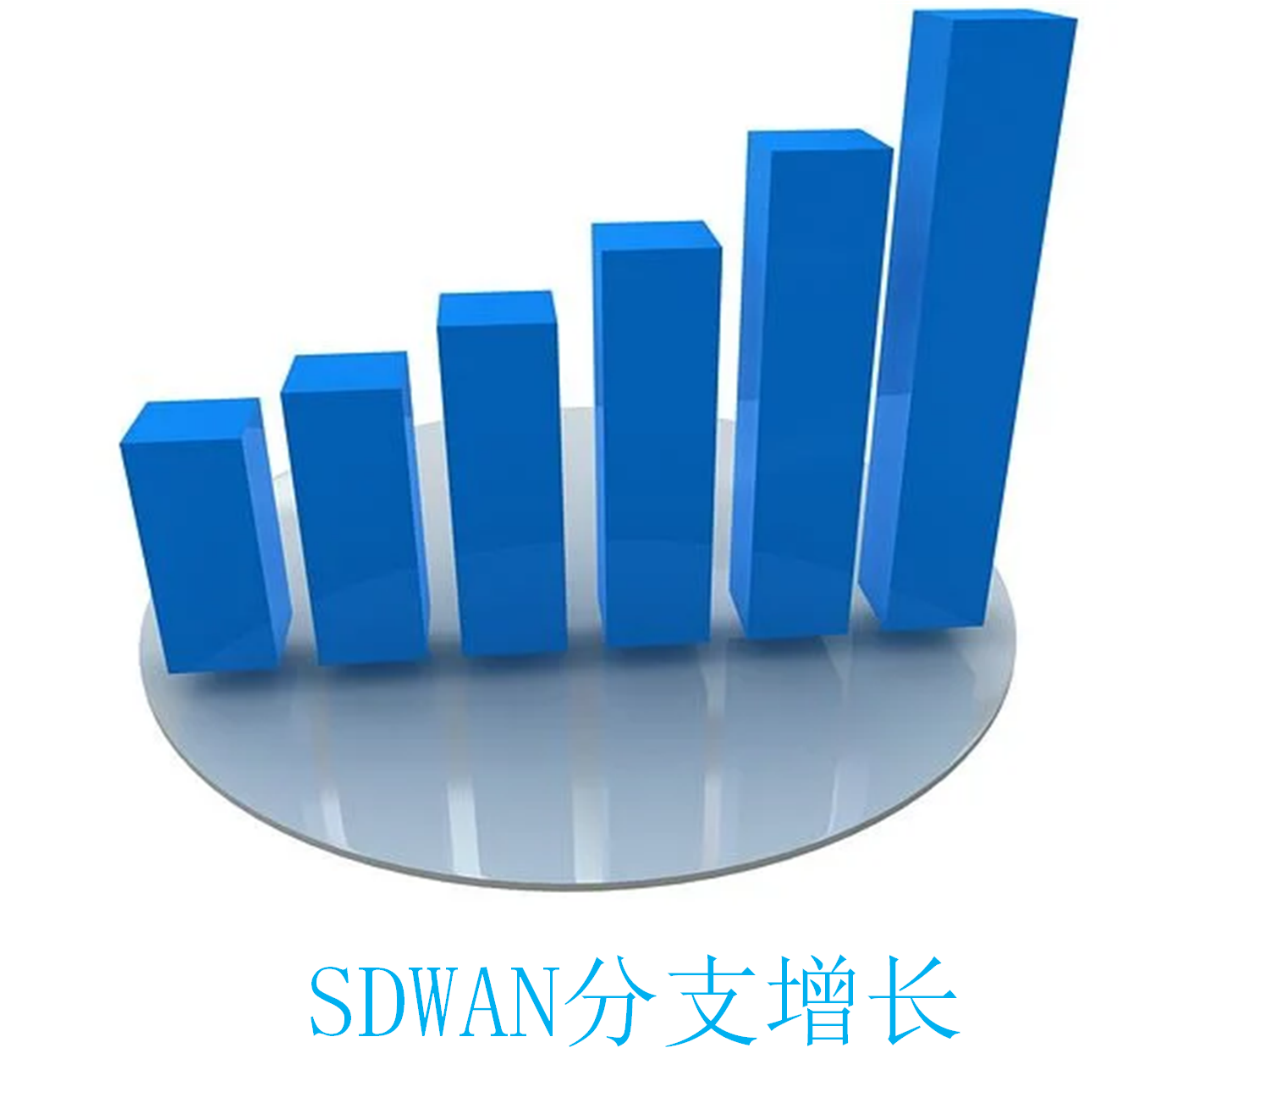 2022年值得关注的7个主要SD-WAN趋势